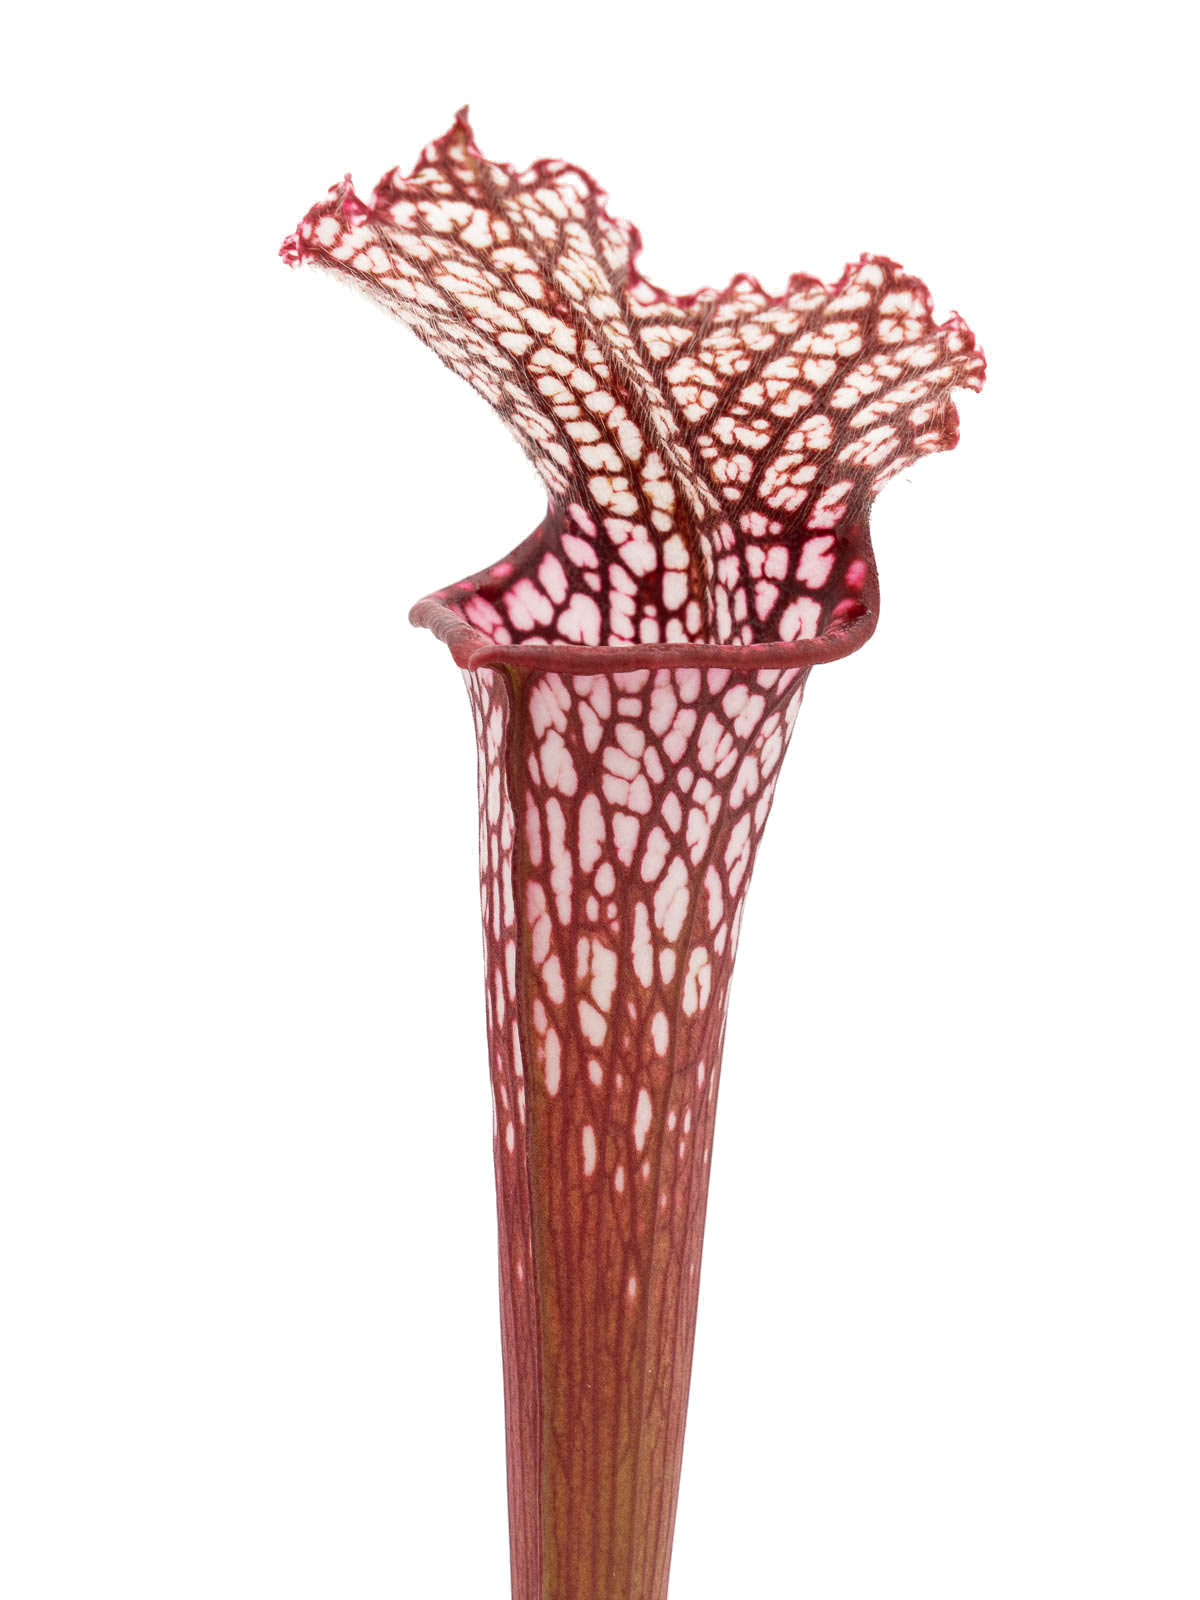 S. leucophylla - red form, Dr. Eberhad König, Clone B